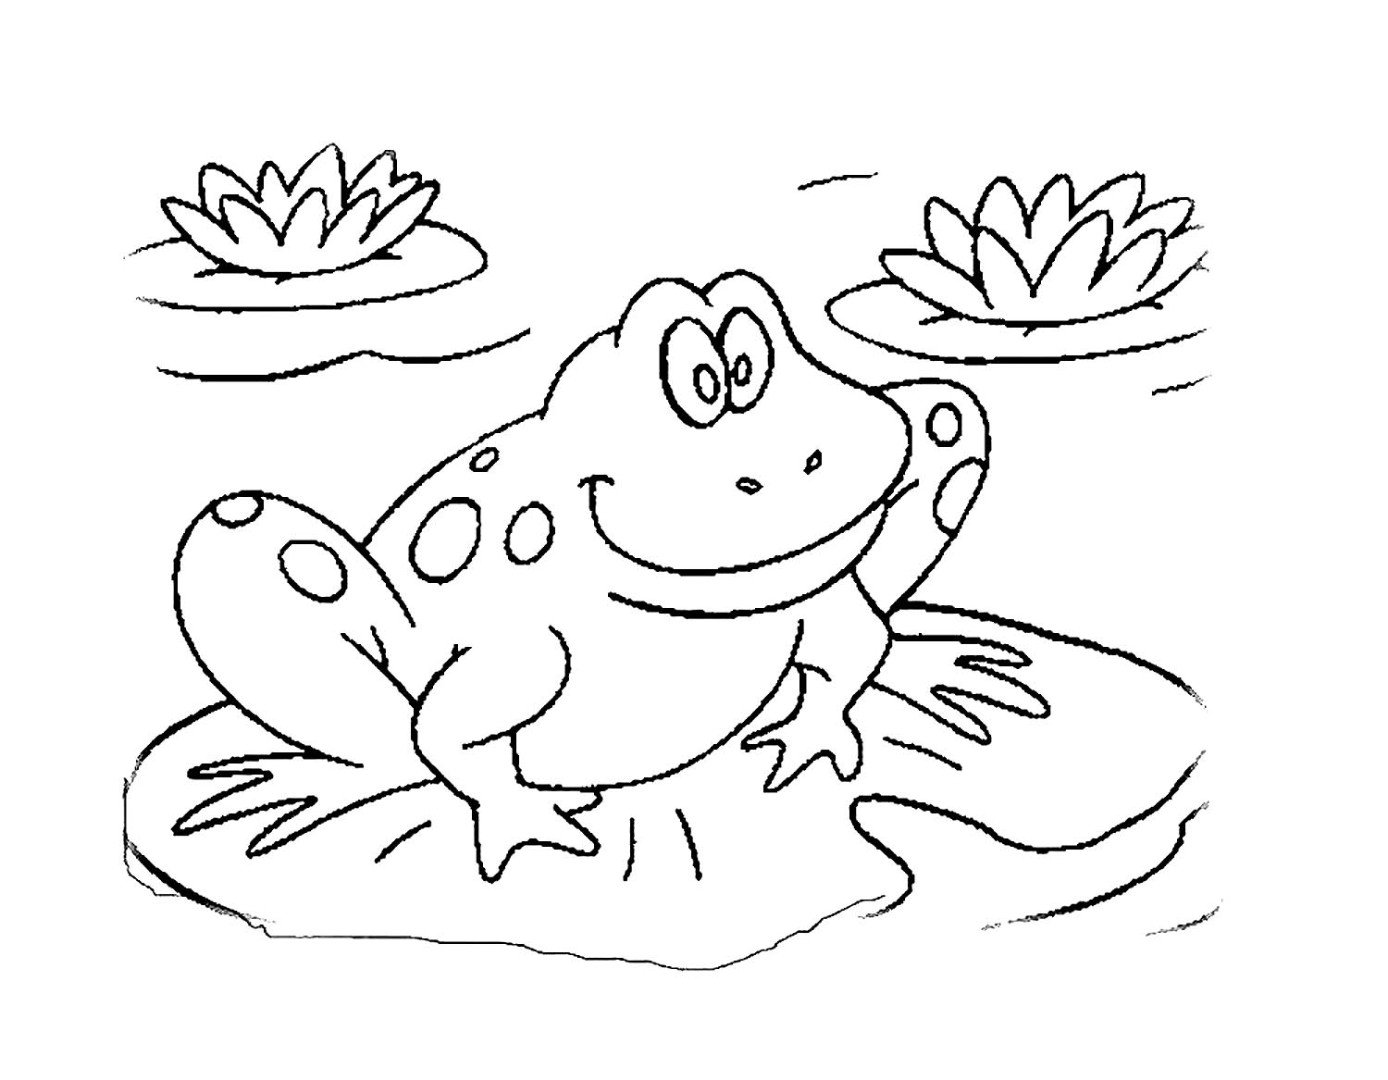 Рисунок лягушки для детей для раскрашивания